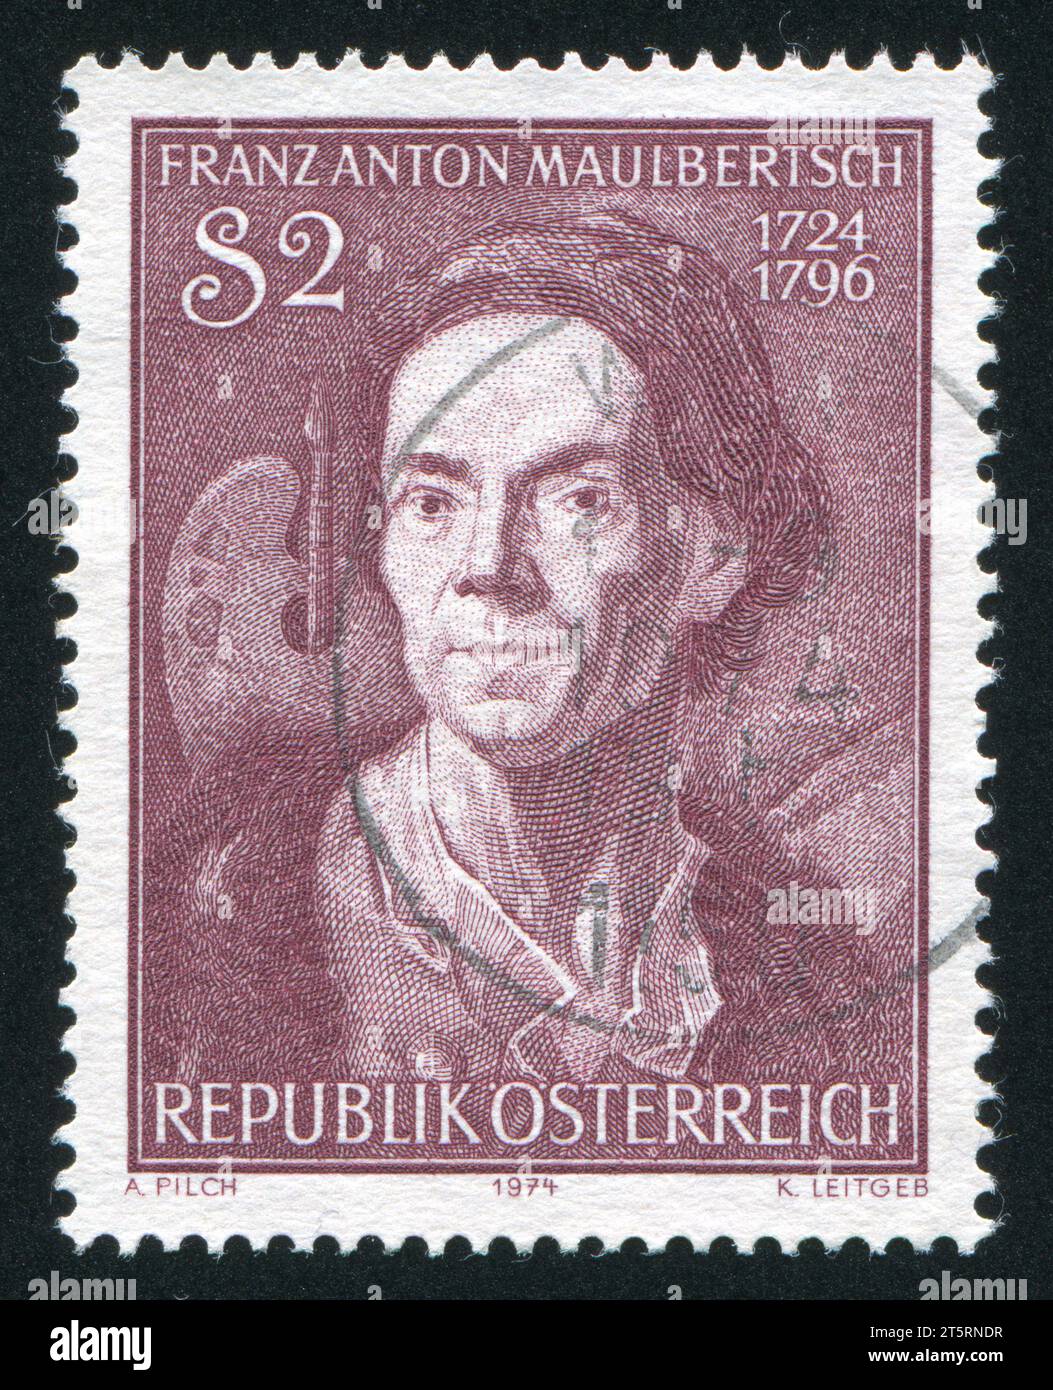 ÖSTERREICH - UM 1974: Briefmarke gedruckt von Österreich, zeigt Franz Anton Maulbertsch, um 1974 Stockfoto